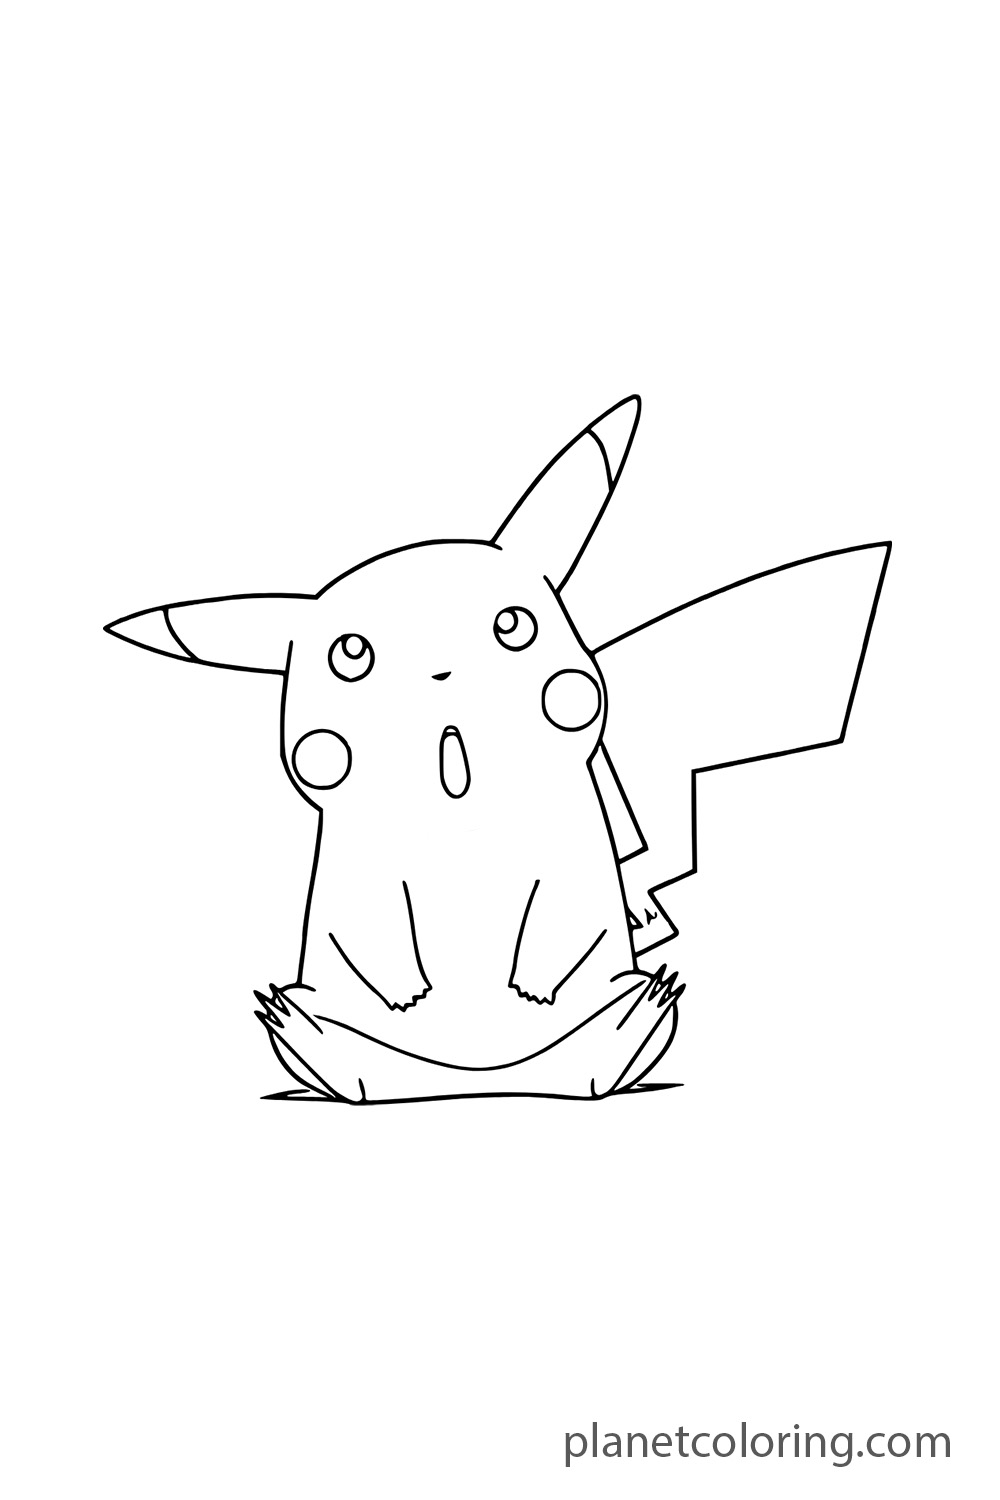 Pikachu surprised